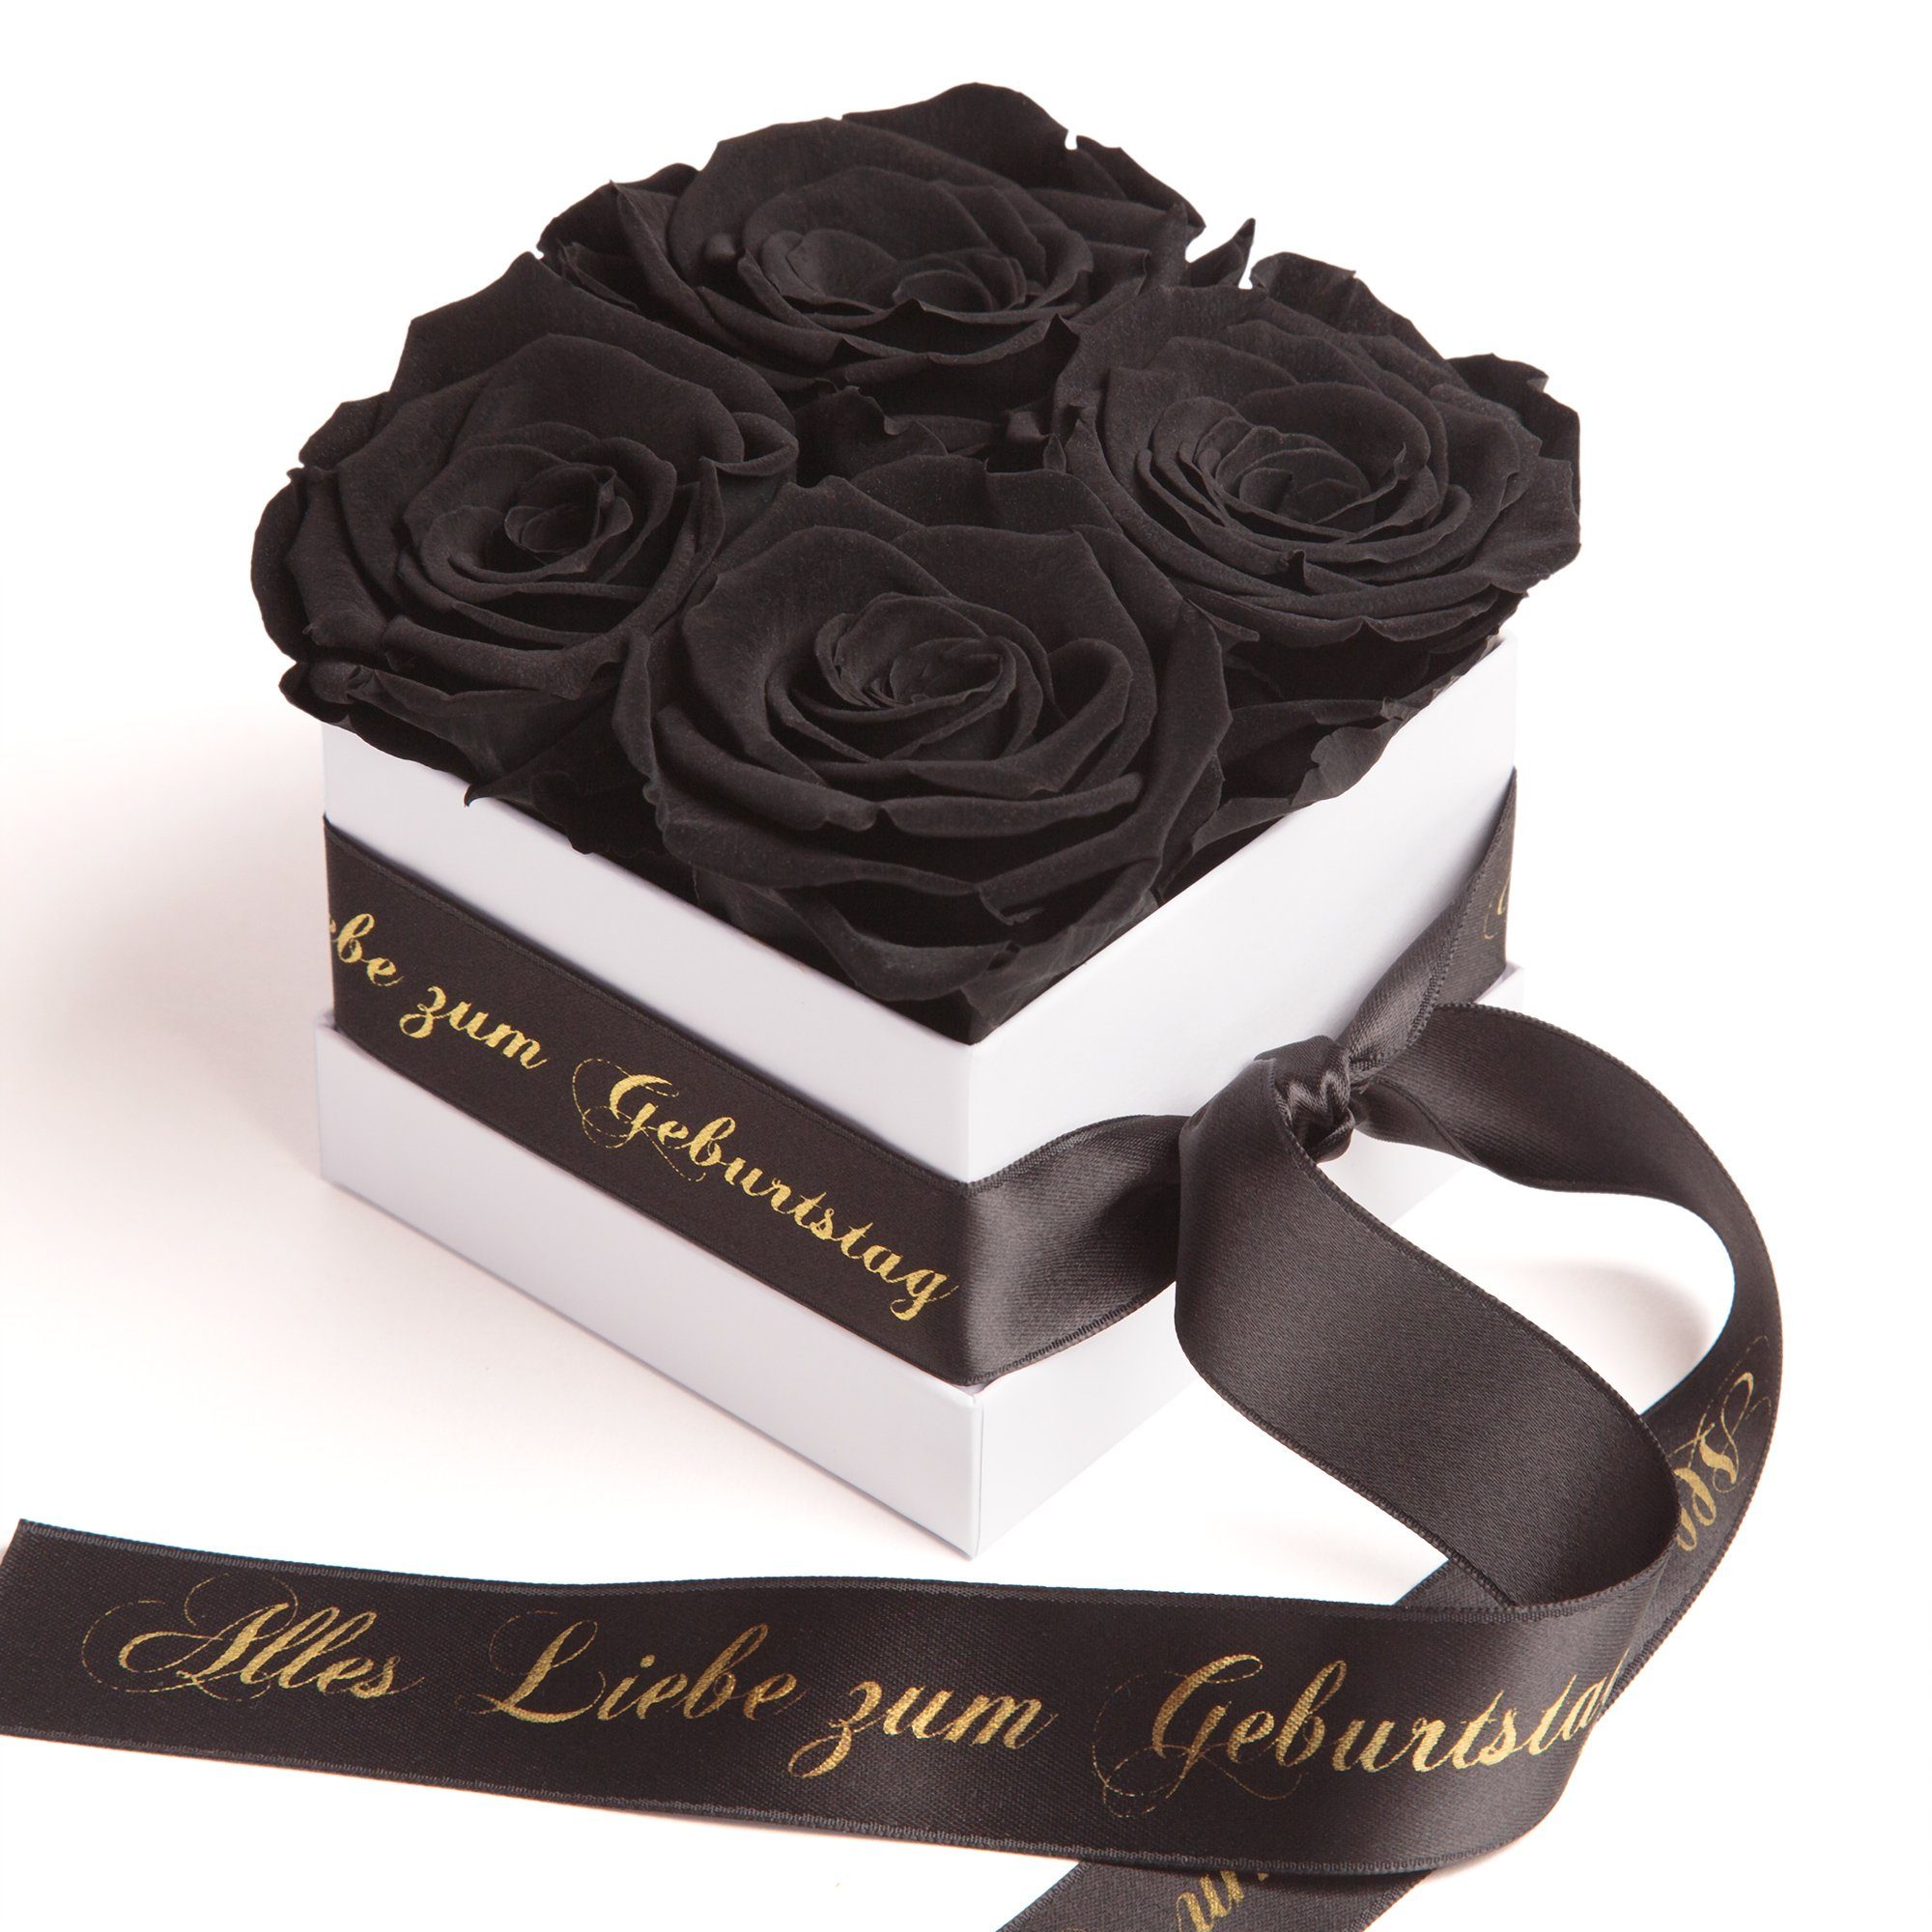 Blumen SCHULZ Dekoobjekt bis Geschenk, ROSEMARIE zu Rose Heidelberg Rosenbox Echte zum schwarz haltbar Jahre Alles Geburtstag Liebe 3 Infinity